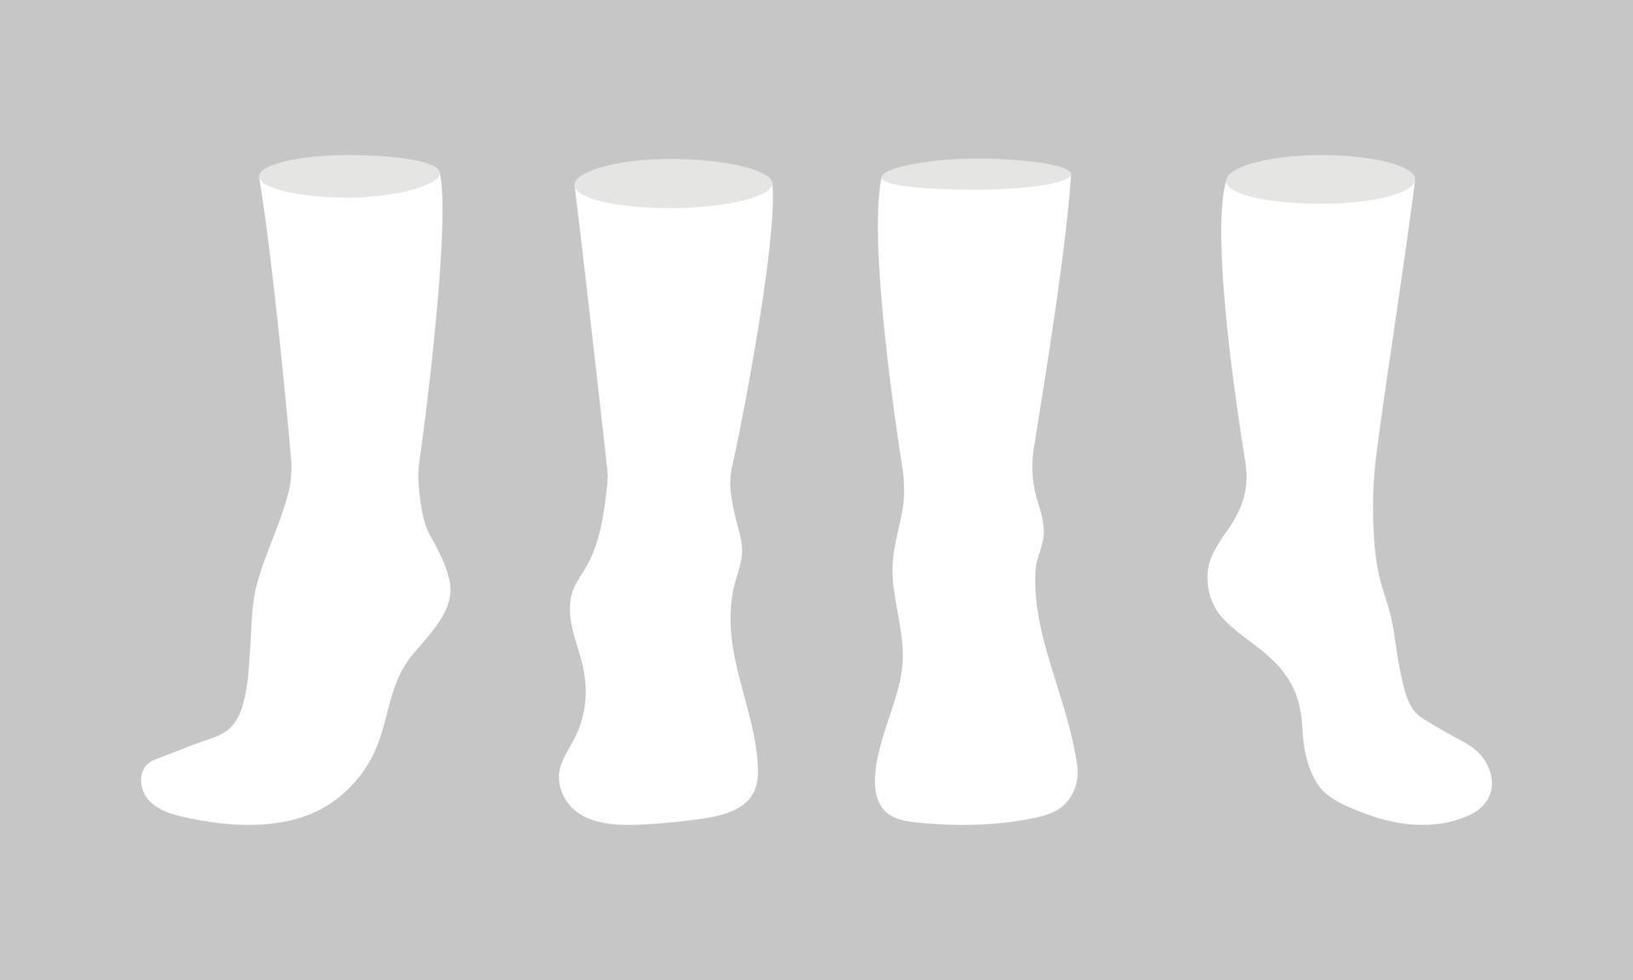 Vektor-Illustrationssatz des flachen Artdesigns des weißen Sockenschablonenmodells lokalisiert auf weißem Hintergrund. vektor